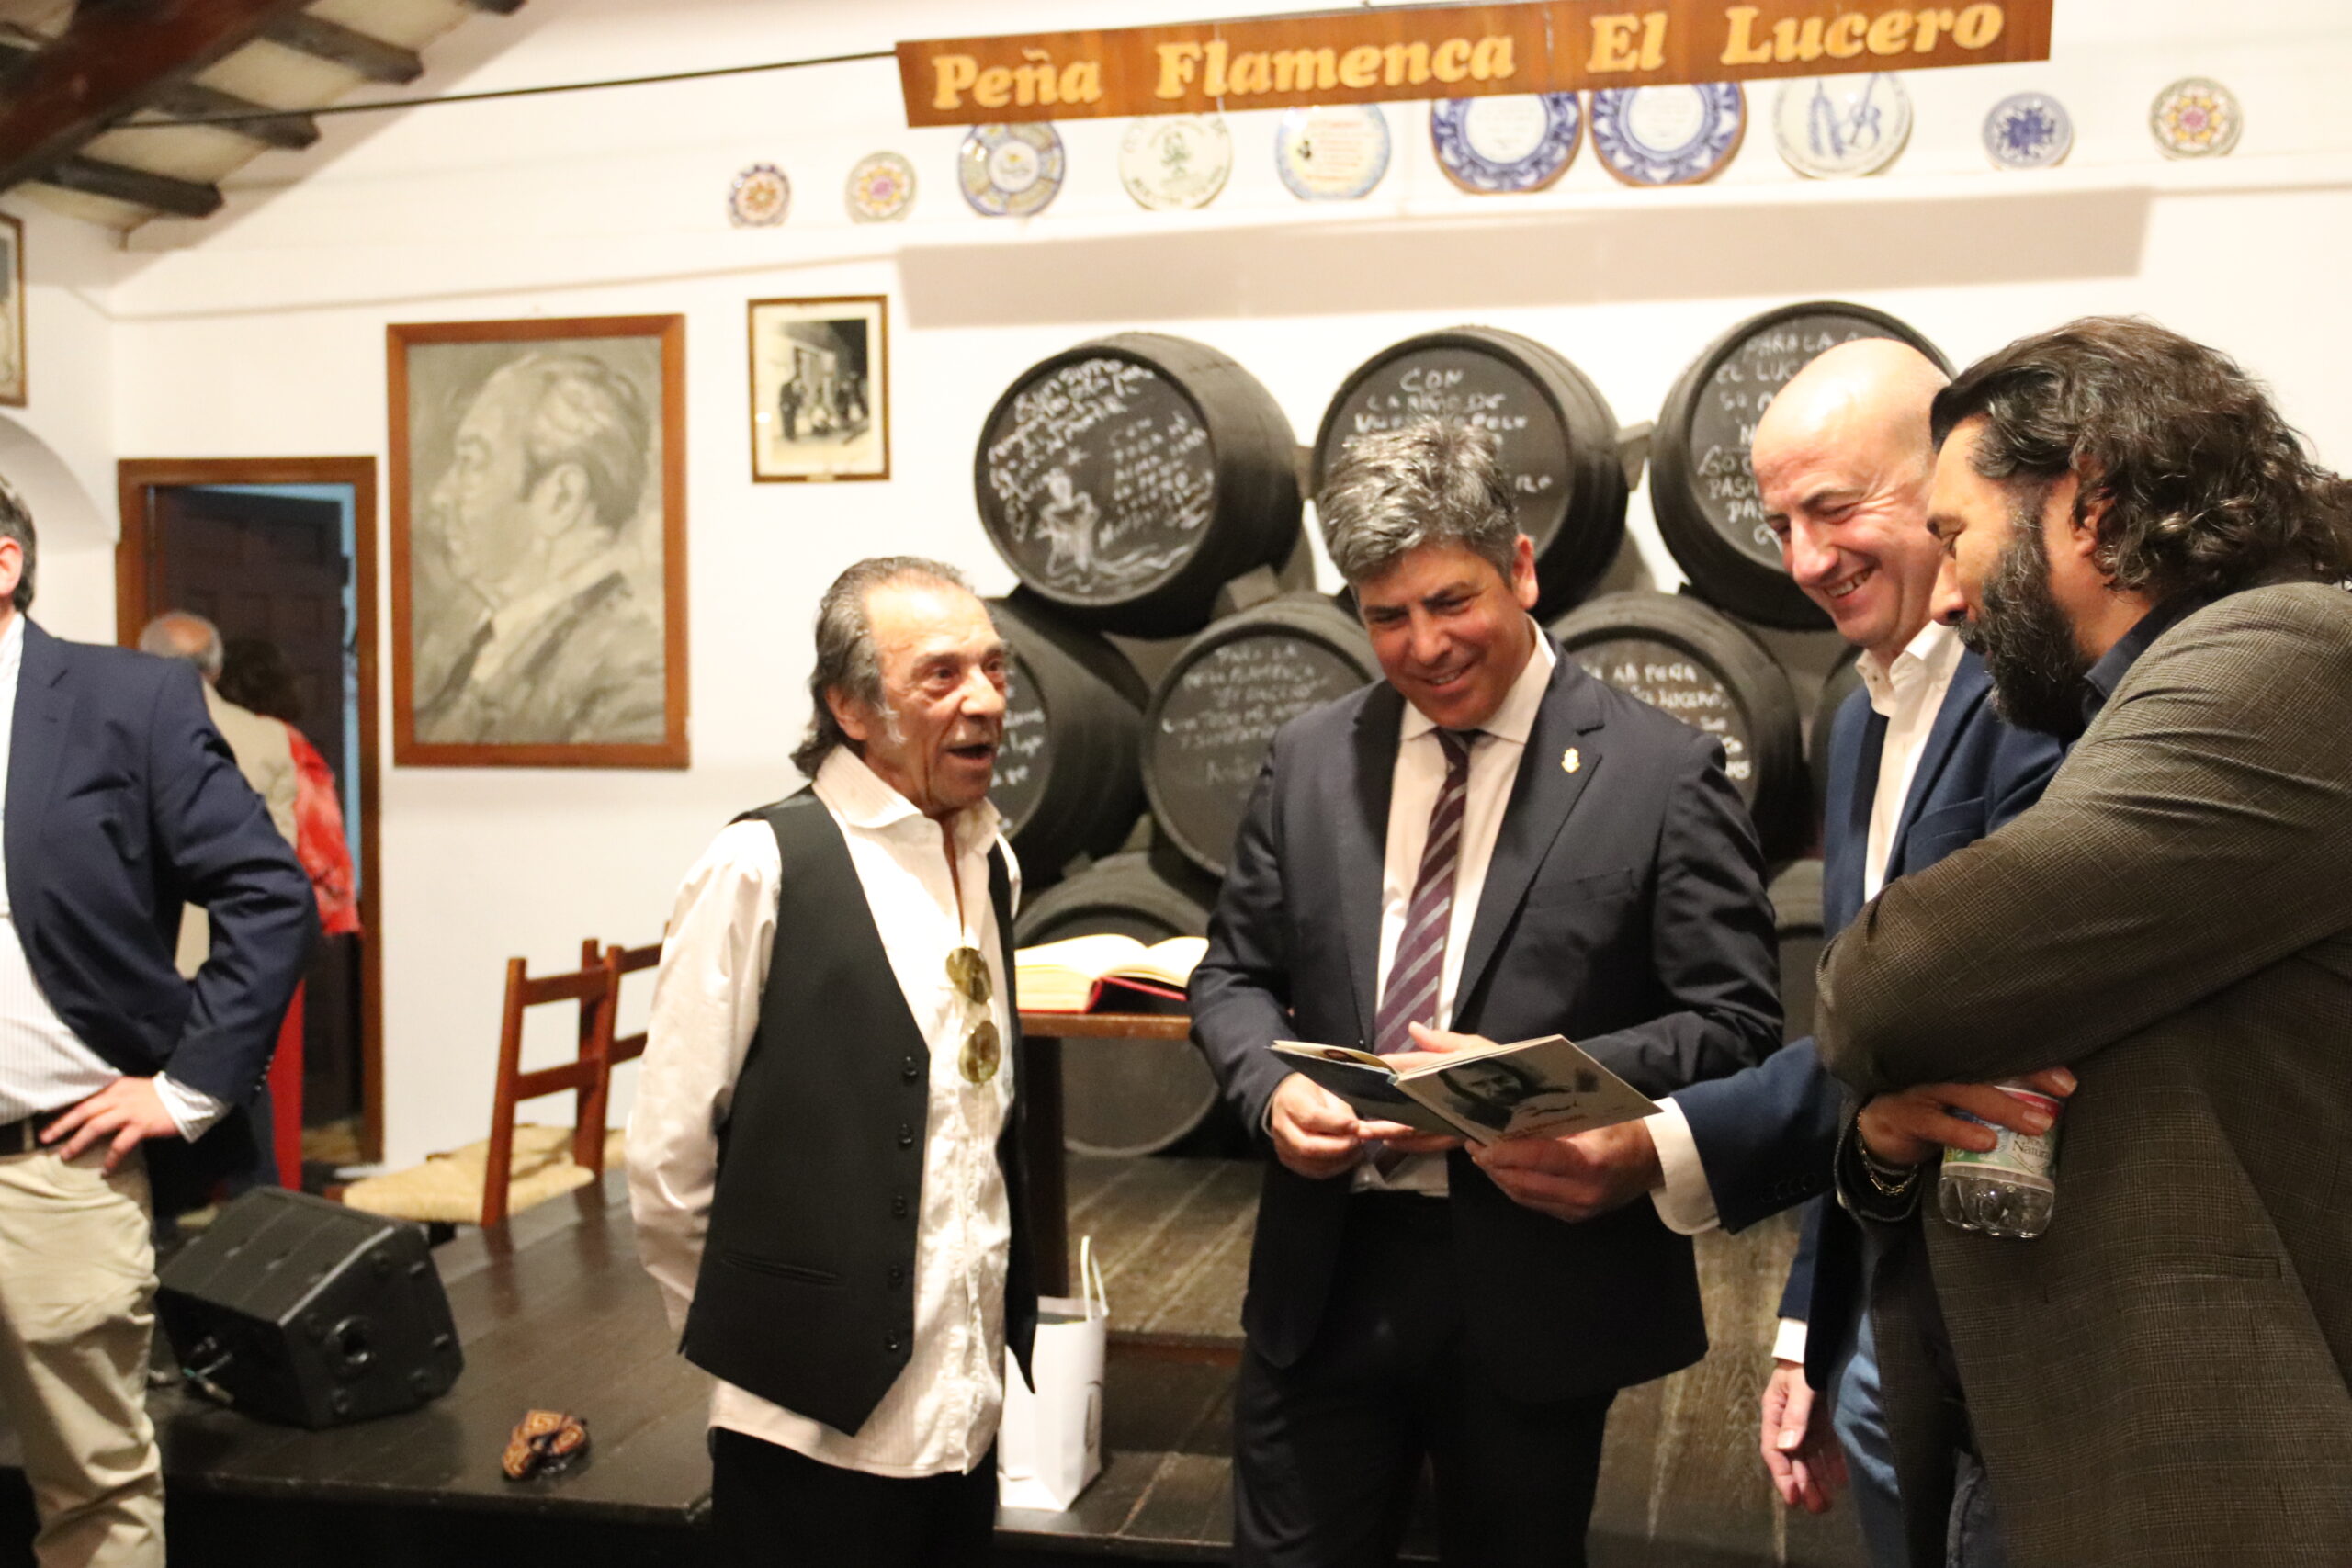 Visita de Pepe Habichuela y el alcalde a la Peña Flamenca